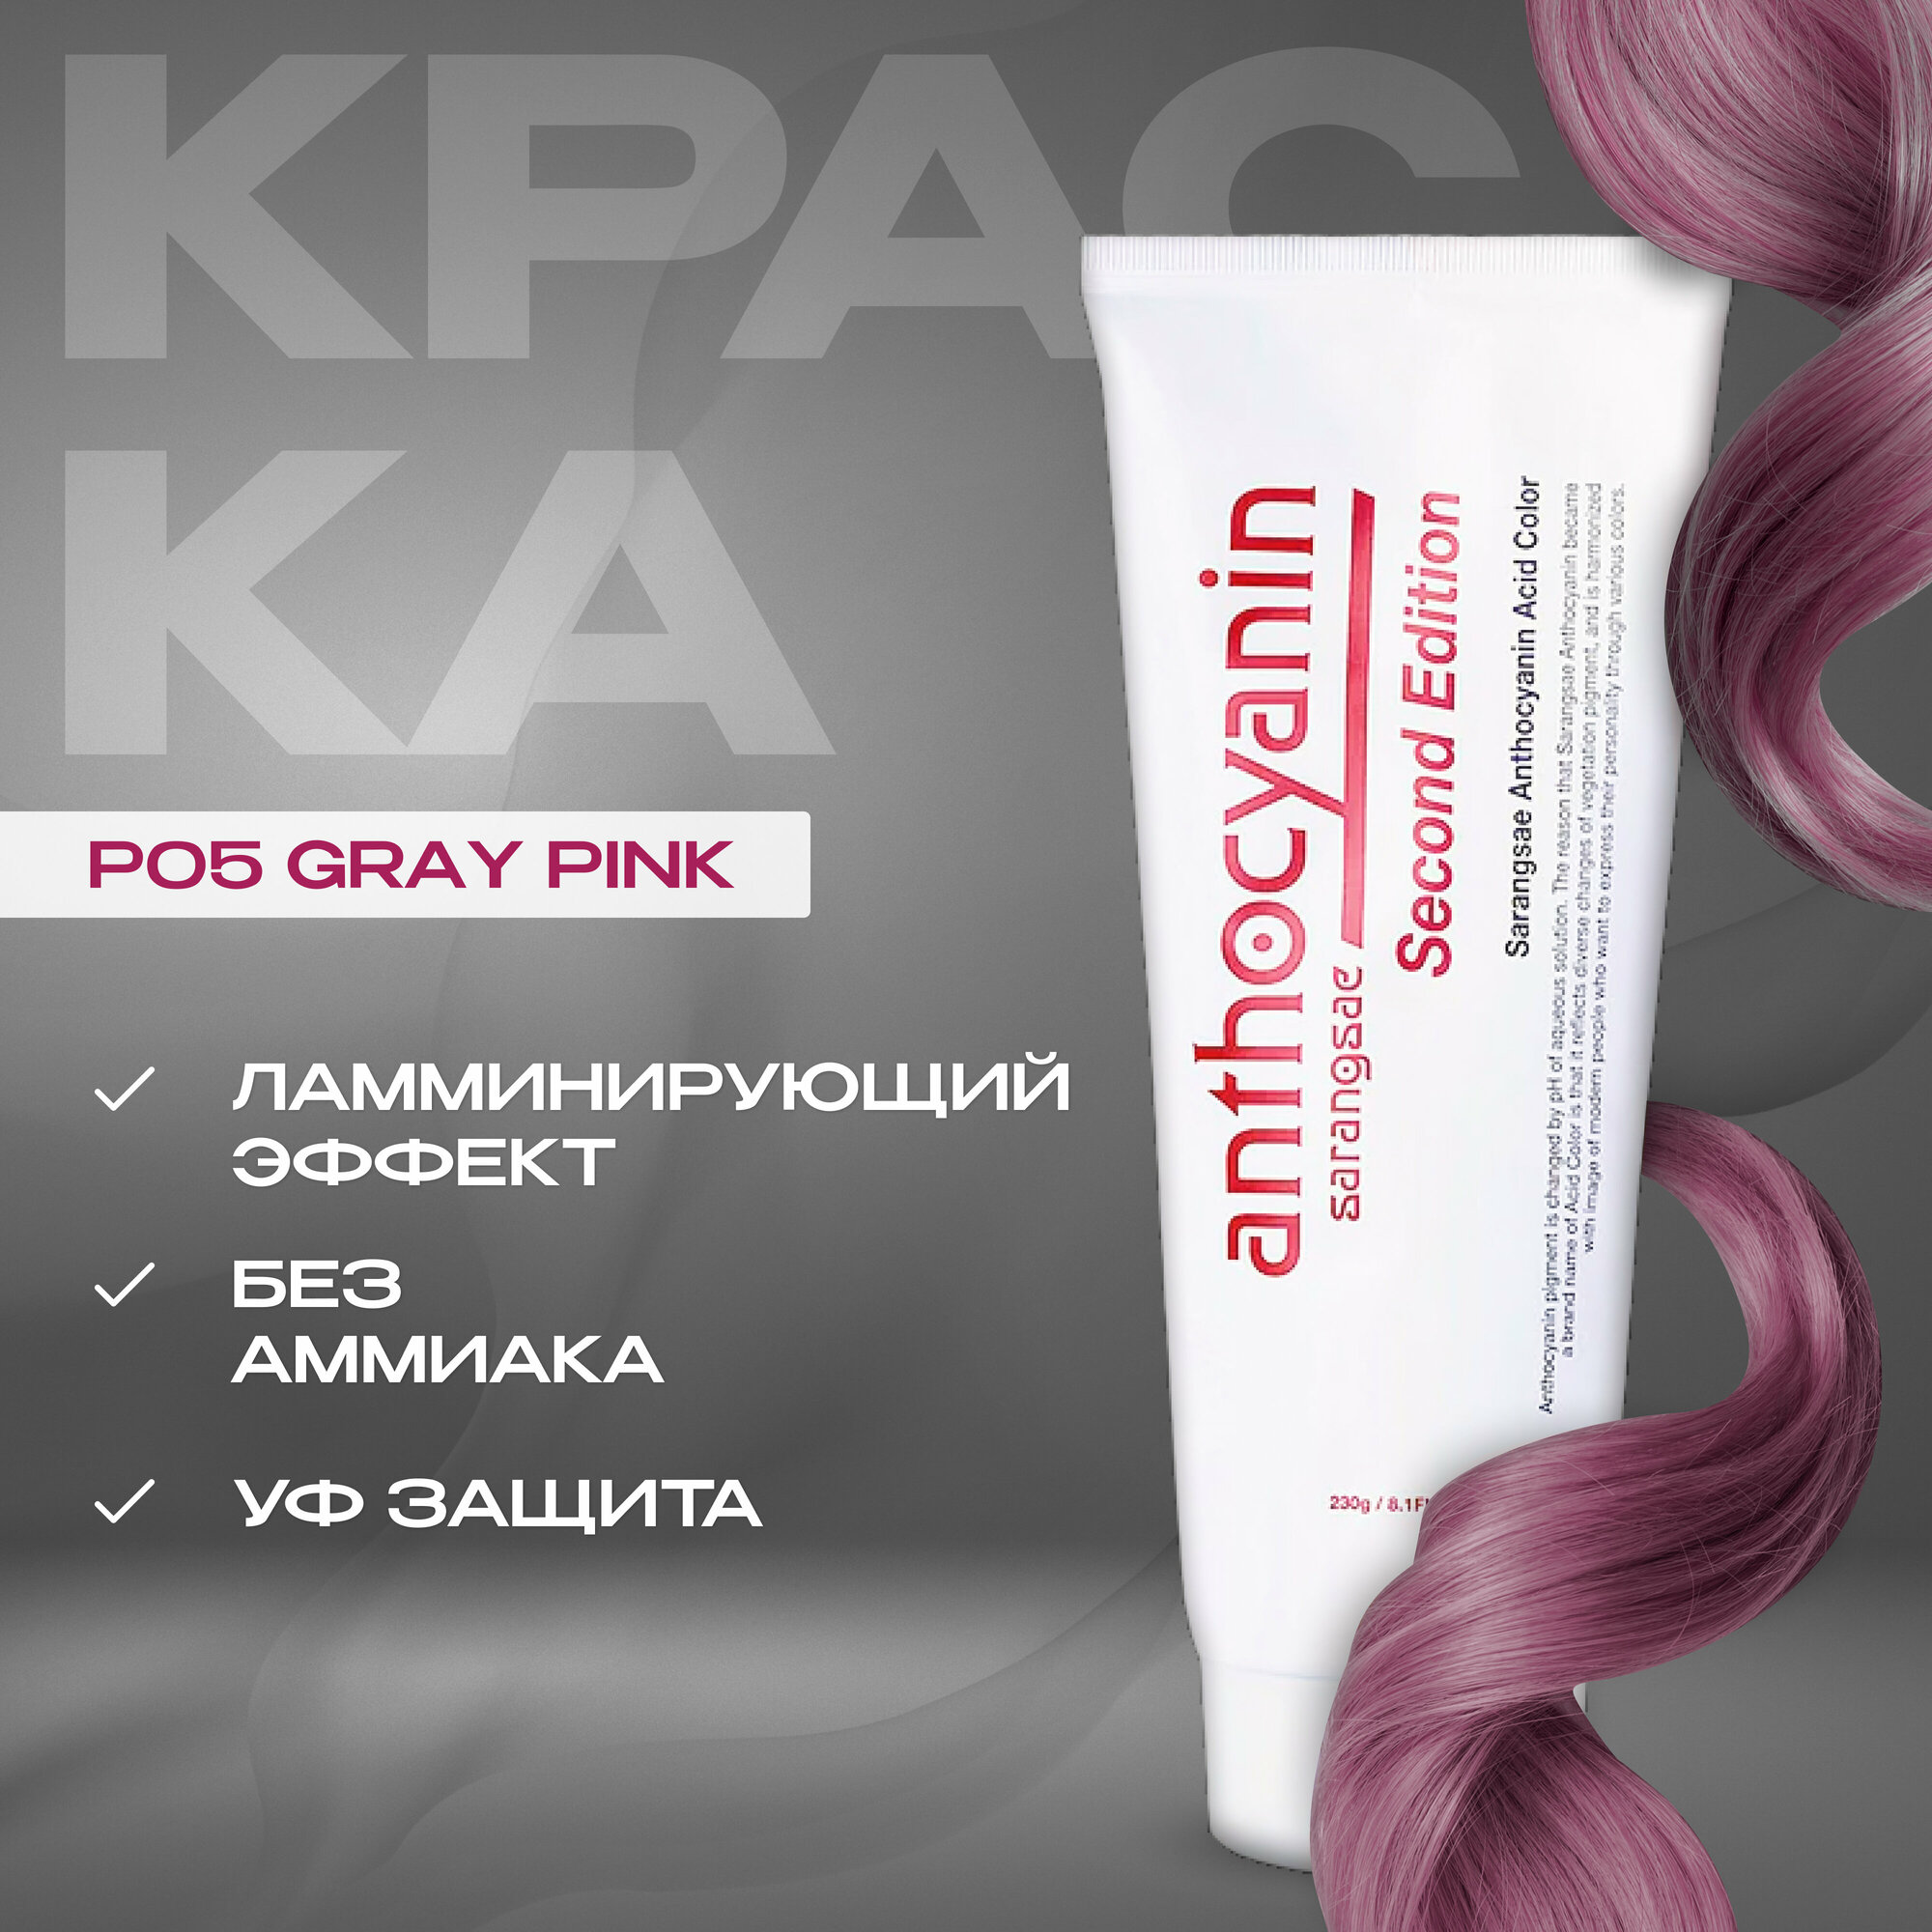 Anthocyanin Розовая краска для волос P05 Gray Pink 230 мл профессиональная без аммиака ламинирующая